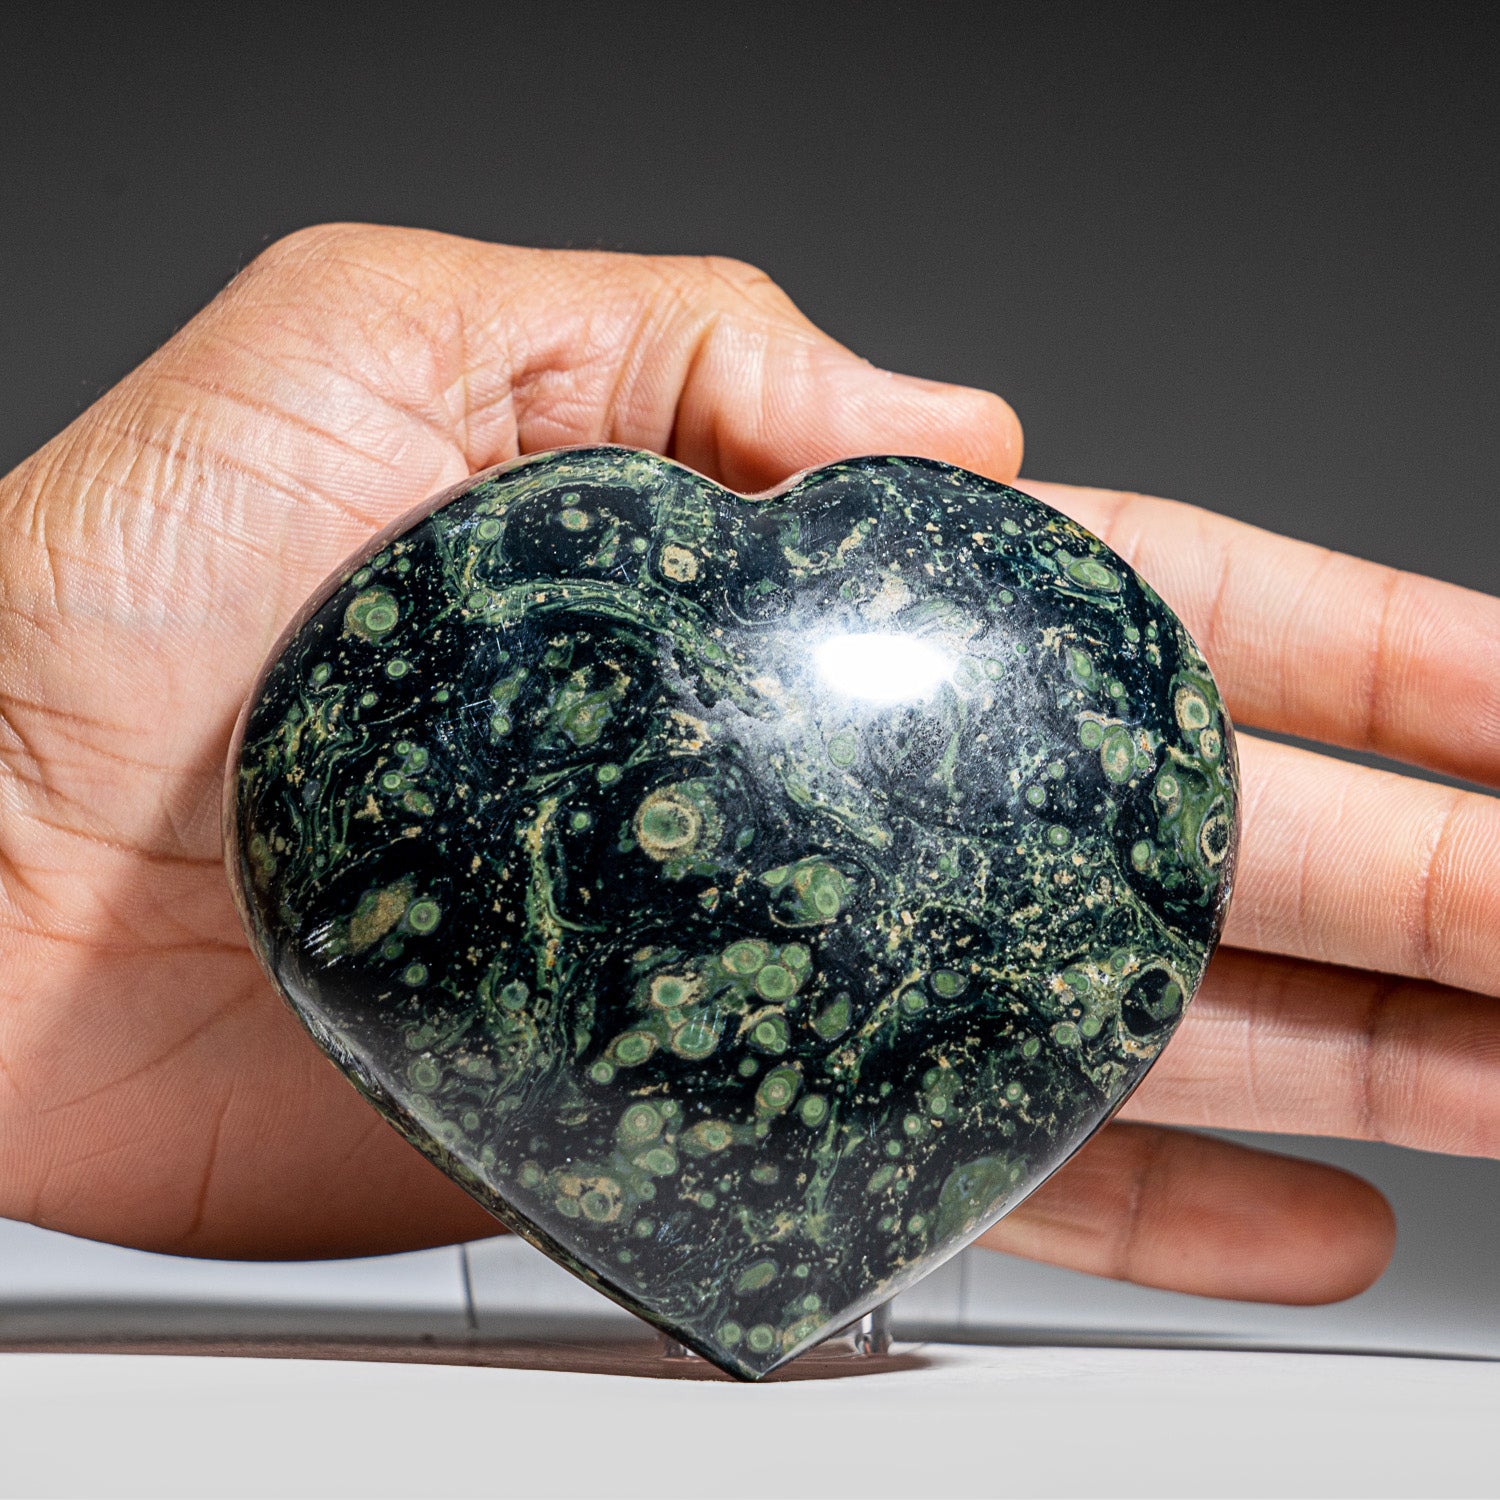 Genuine Polished Kambaba Jasper Heart (447.5 grams)